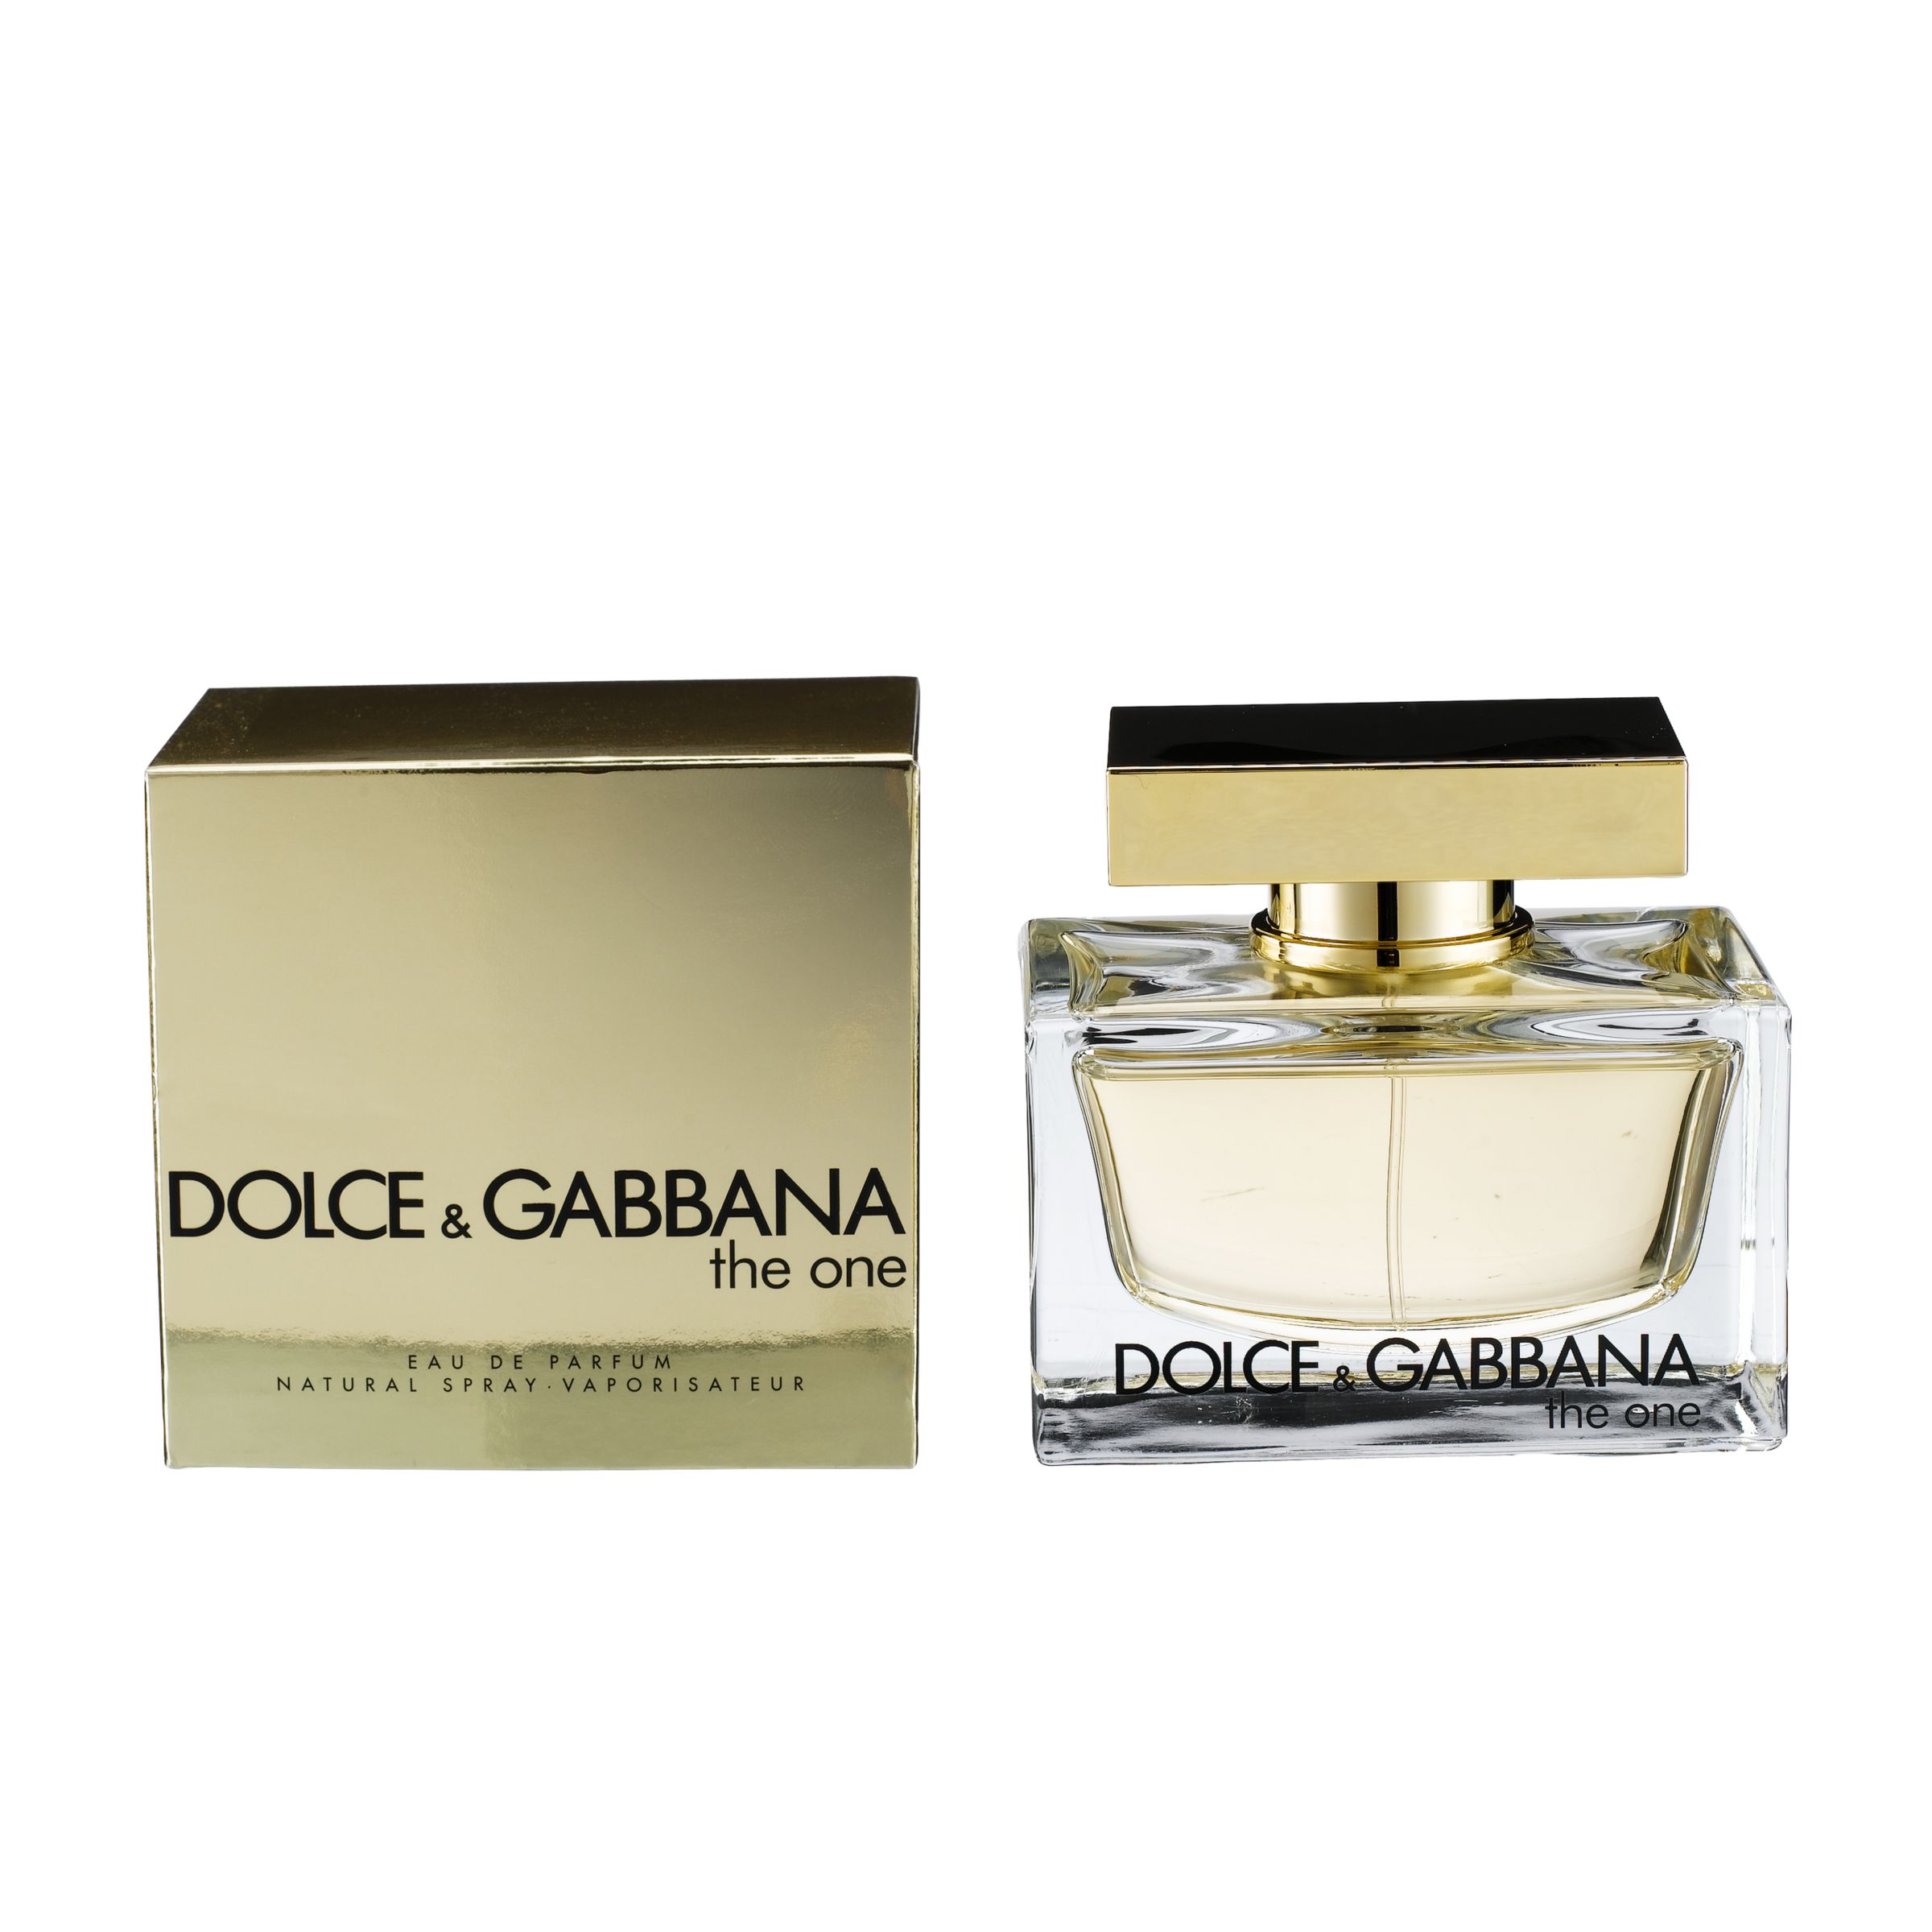 Dolce & Gabbana The One Eau de Parfum at John Lewis